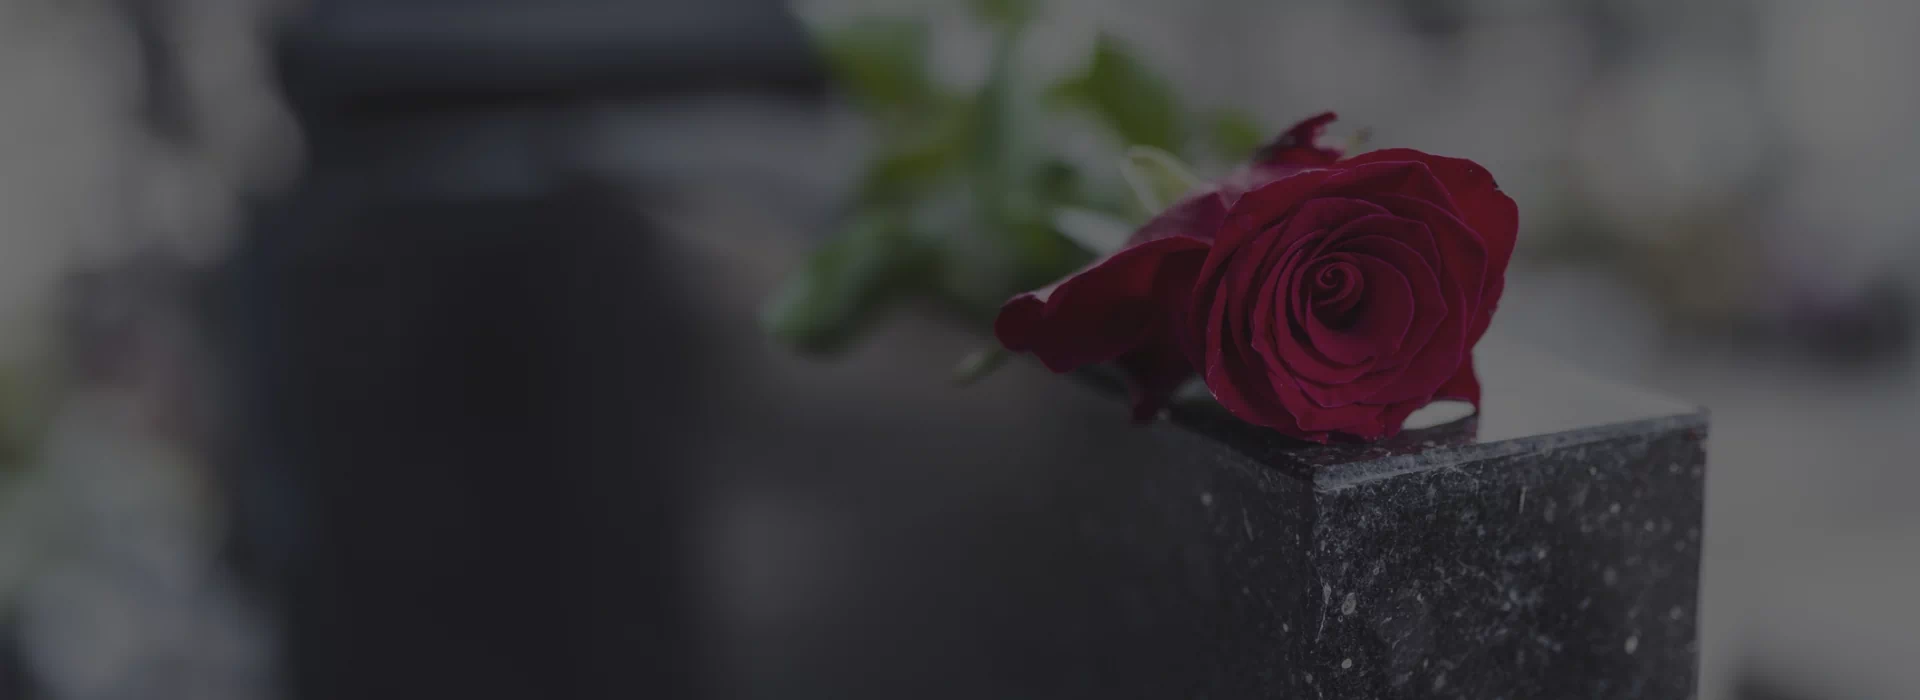 Slajd 3 - czerwona róża na grobie